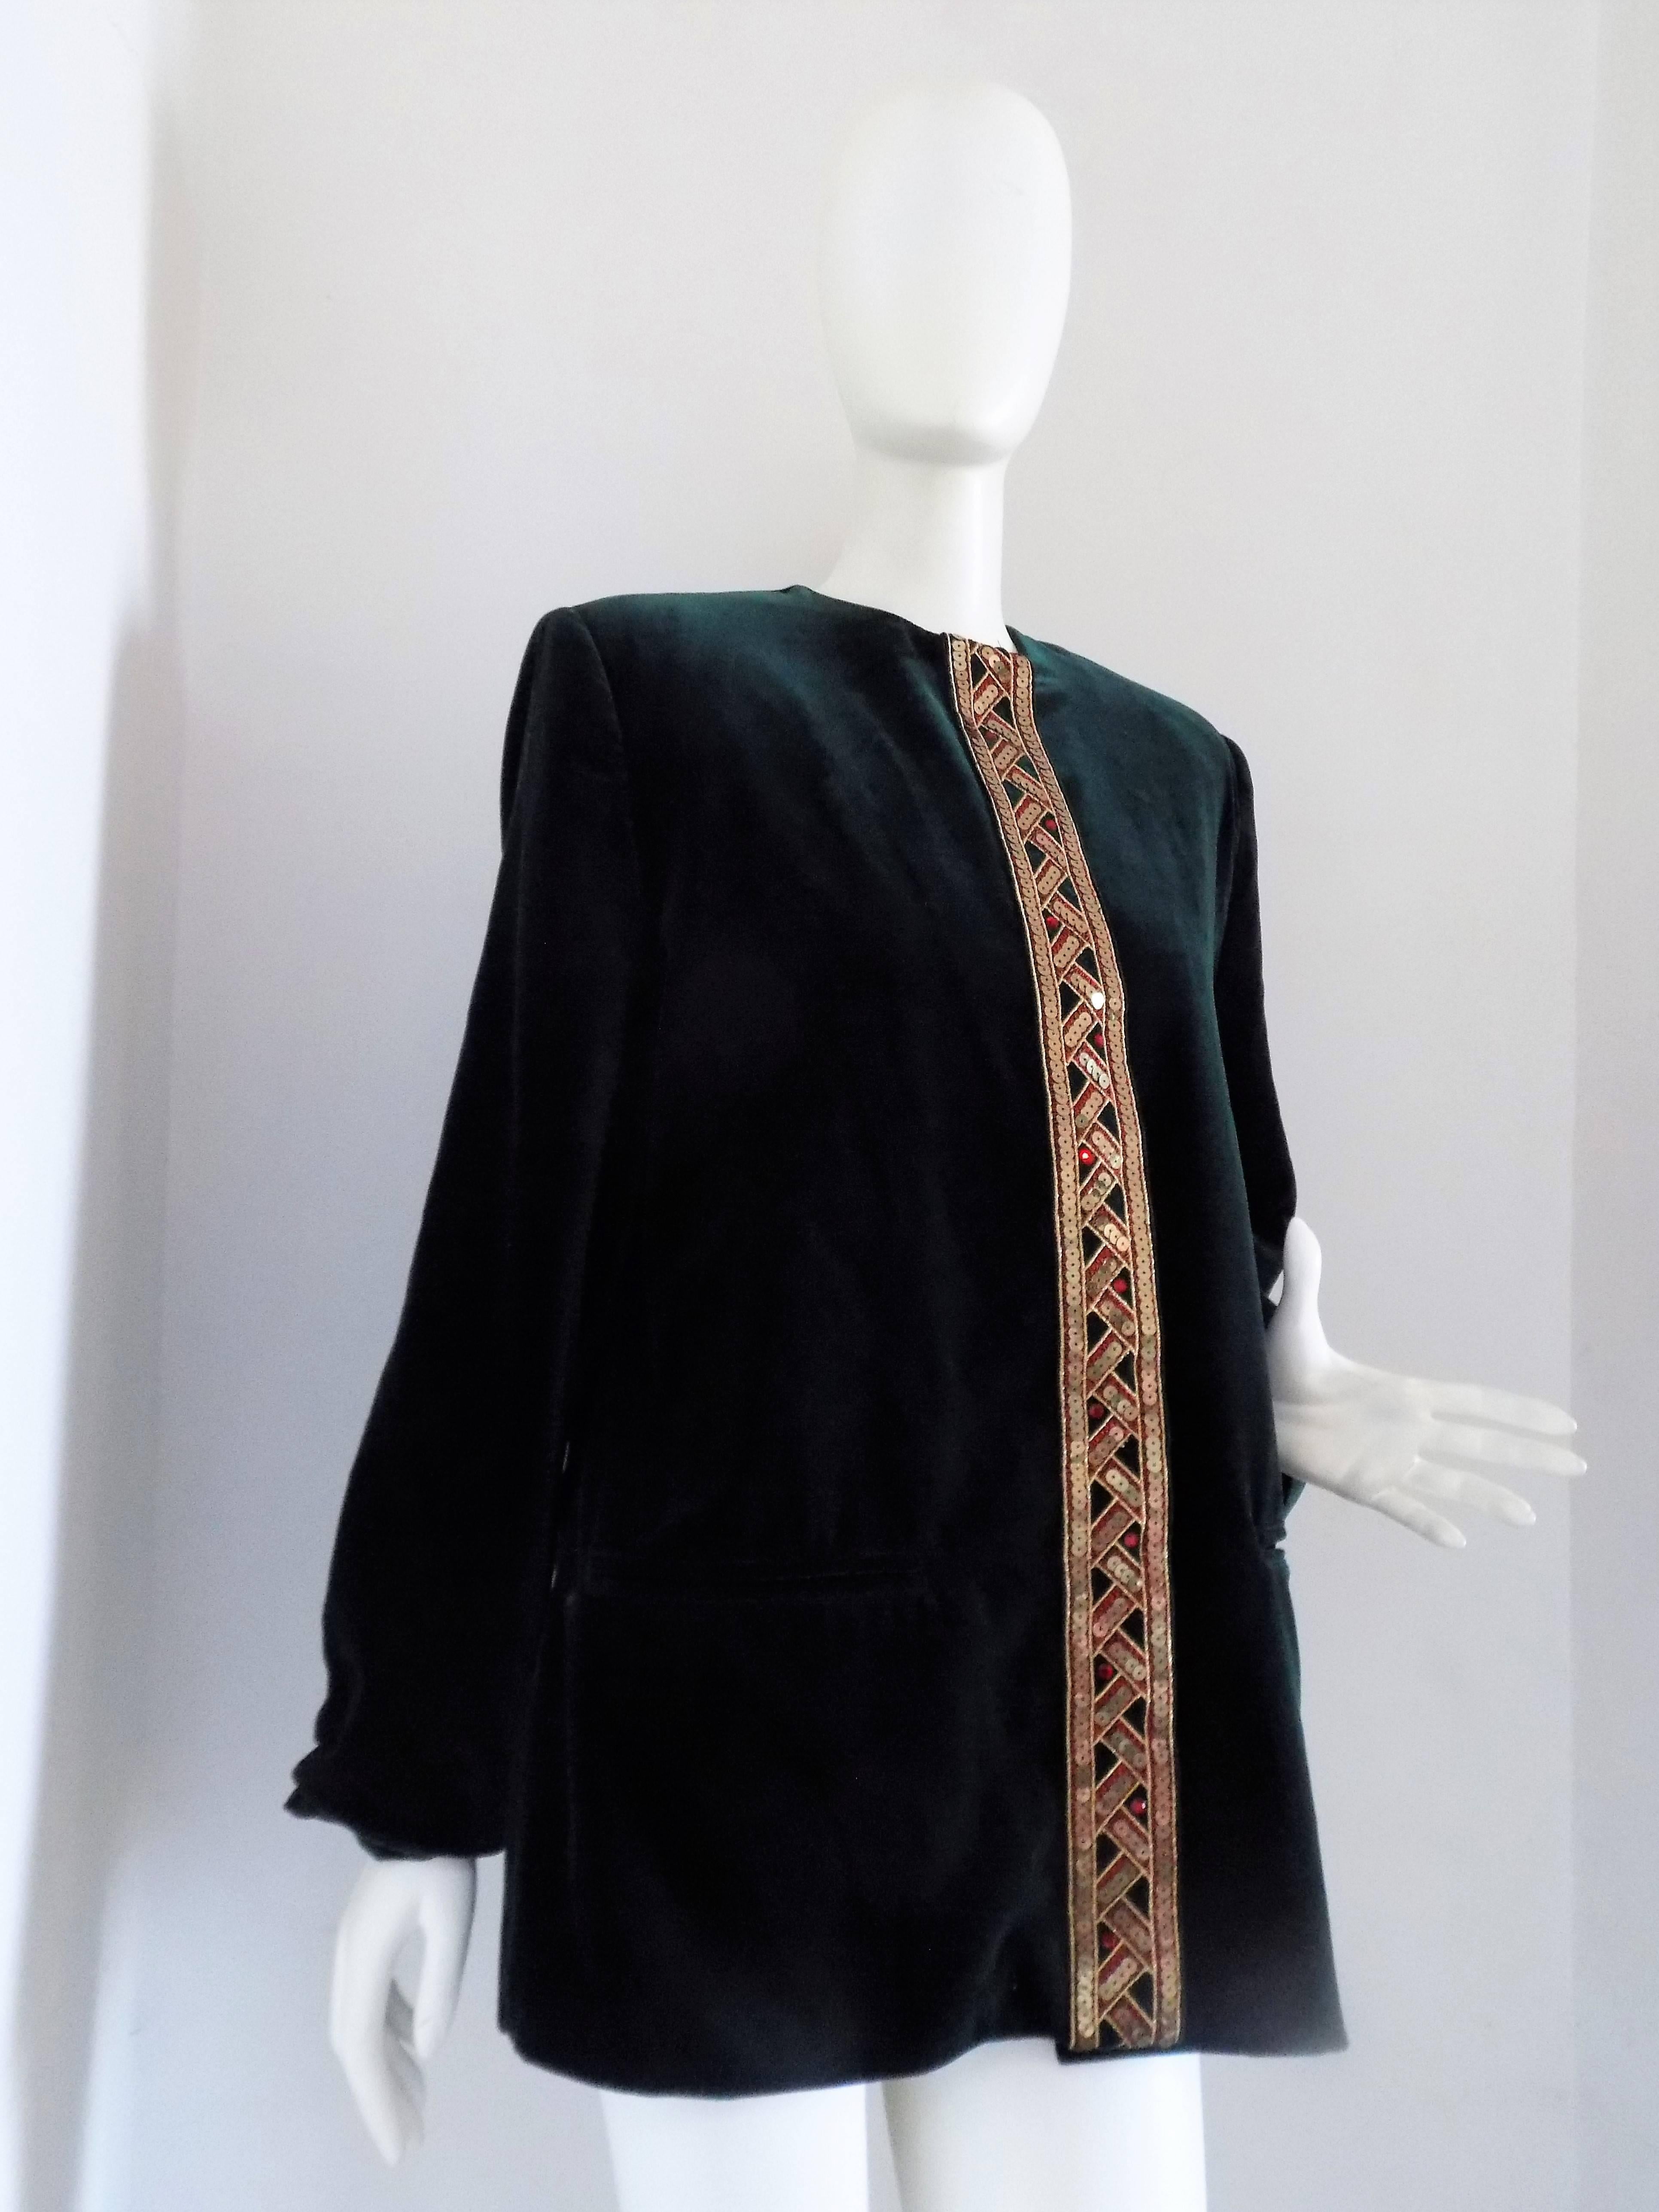 Gossi Green Velvet Jacket  totally made in salzburg in size 42
Gold tone sequins
total lenght 74 cm
shoulder to hem 60 cm